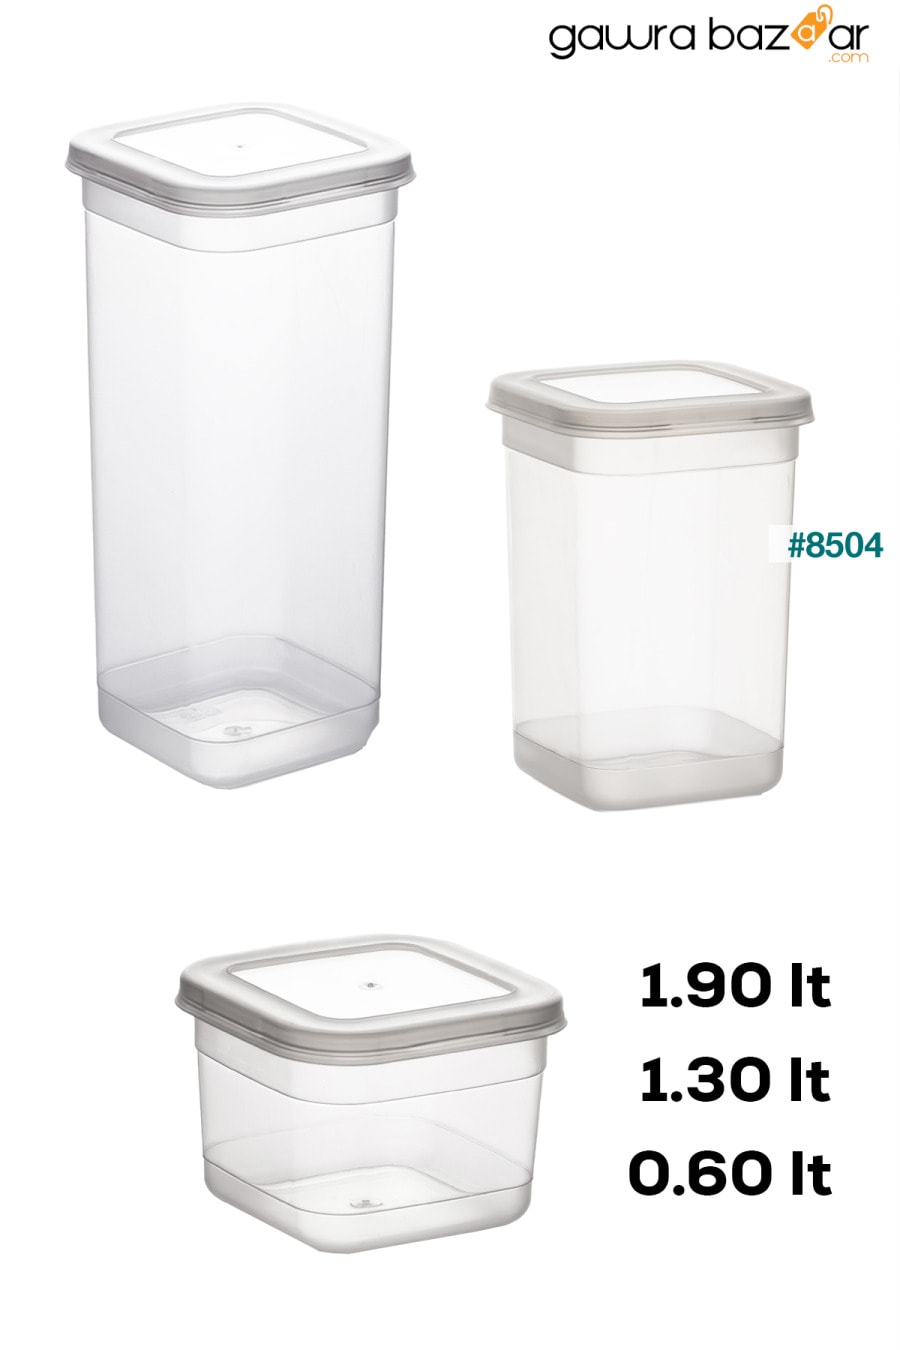 433-6 مجموعة حاويات تخزين التوابل المكونة من 36 قطعة مربعة من المواد الغذائية 12x(0.60+1.30+1.90) لتر شفاف Porsima 2